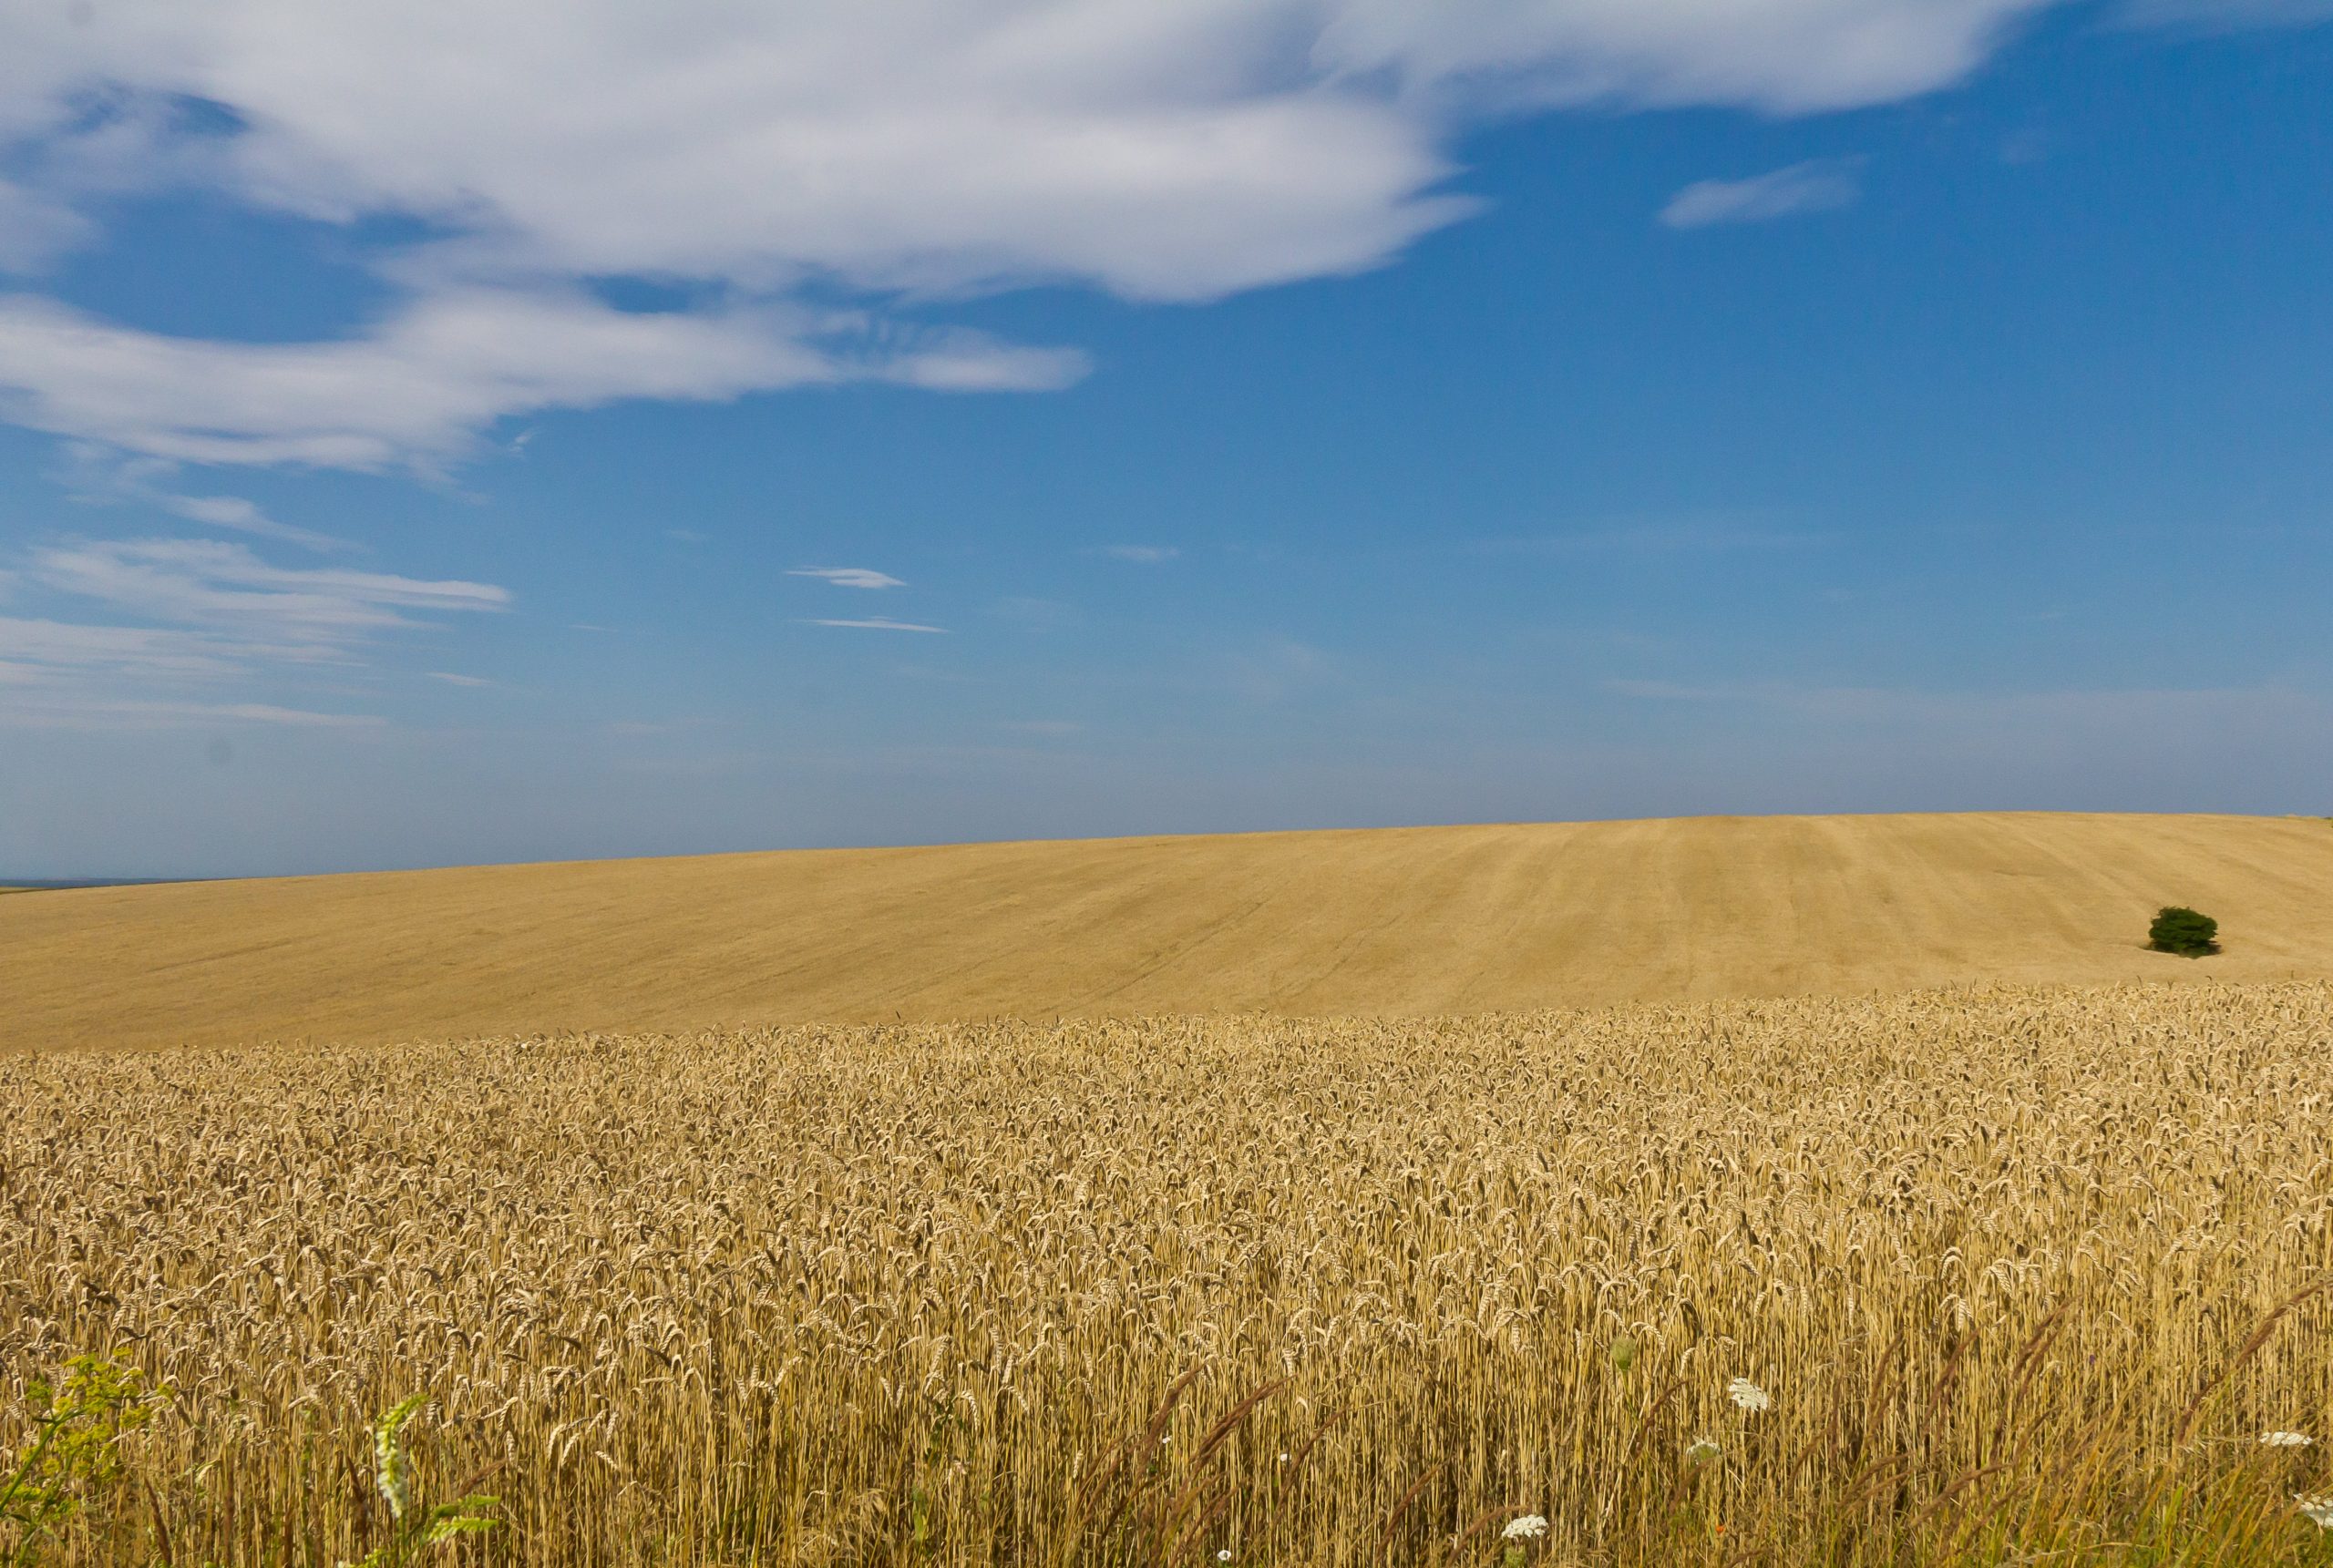 A Guerra entre Rússia e Ucrânia está agravando a crise alimentar, já que a região é responsável por 30% das exportações globais de trigo (Foto: Raimond Spekking - USNI News)